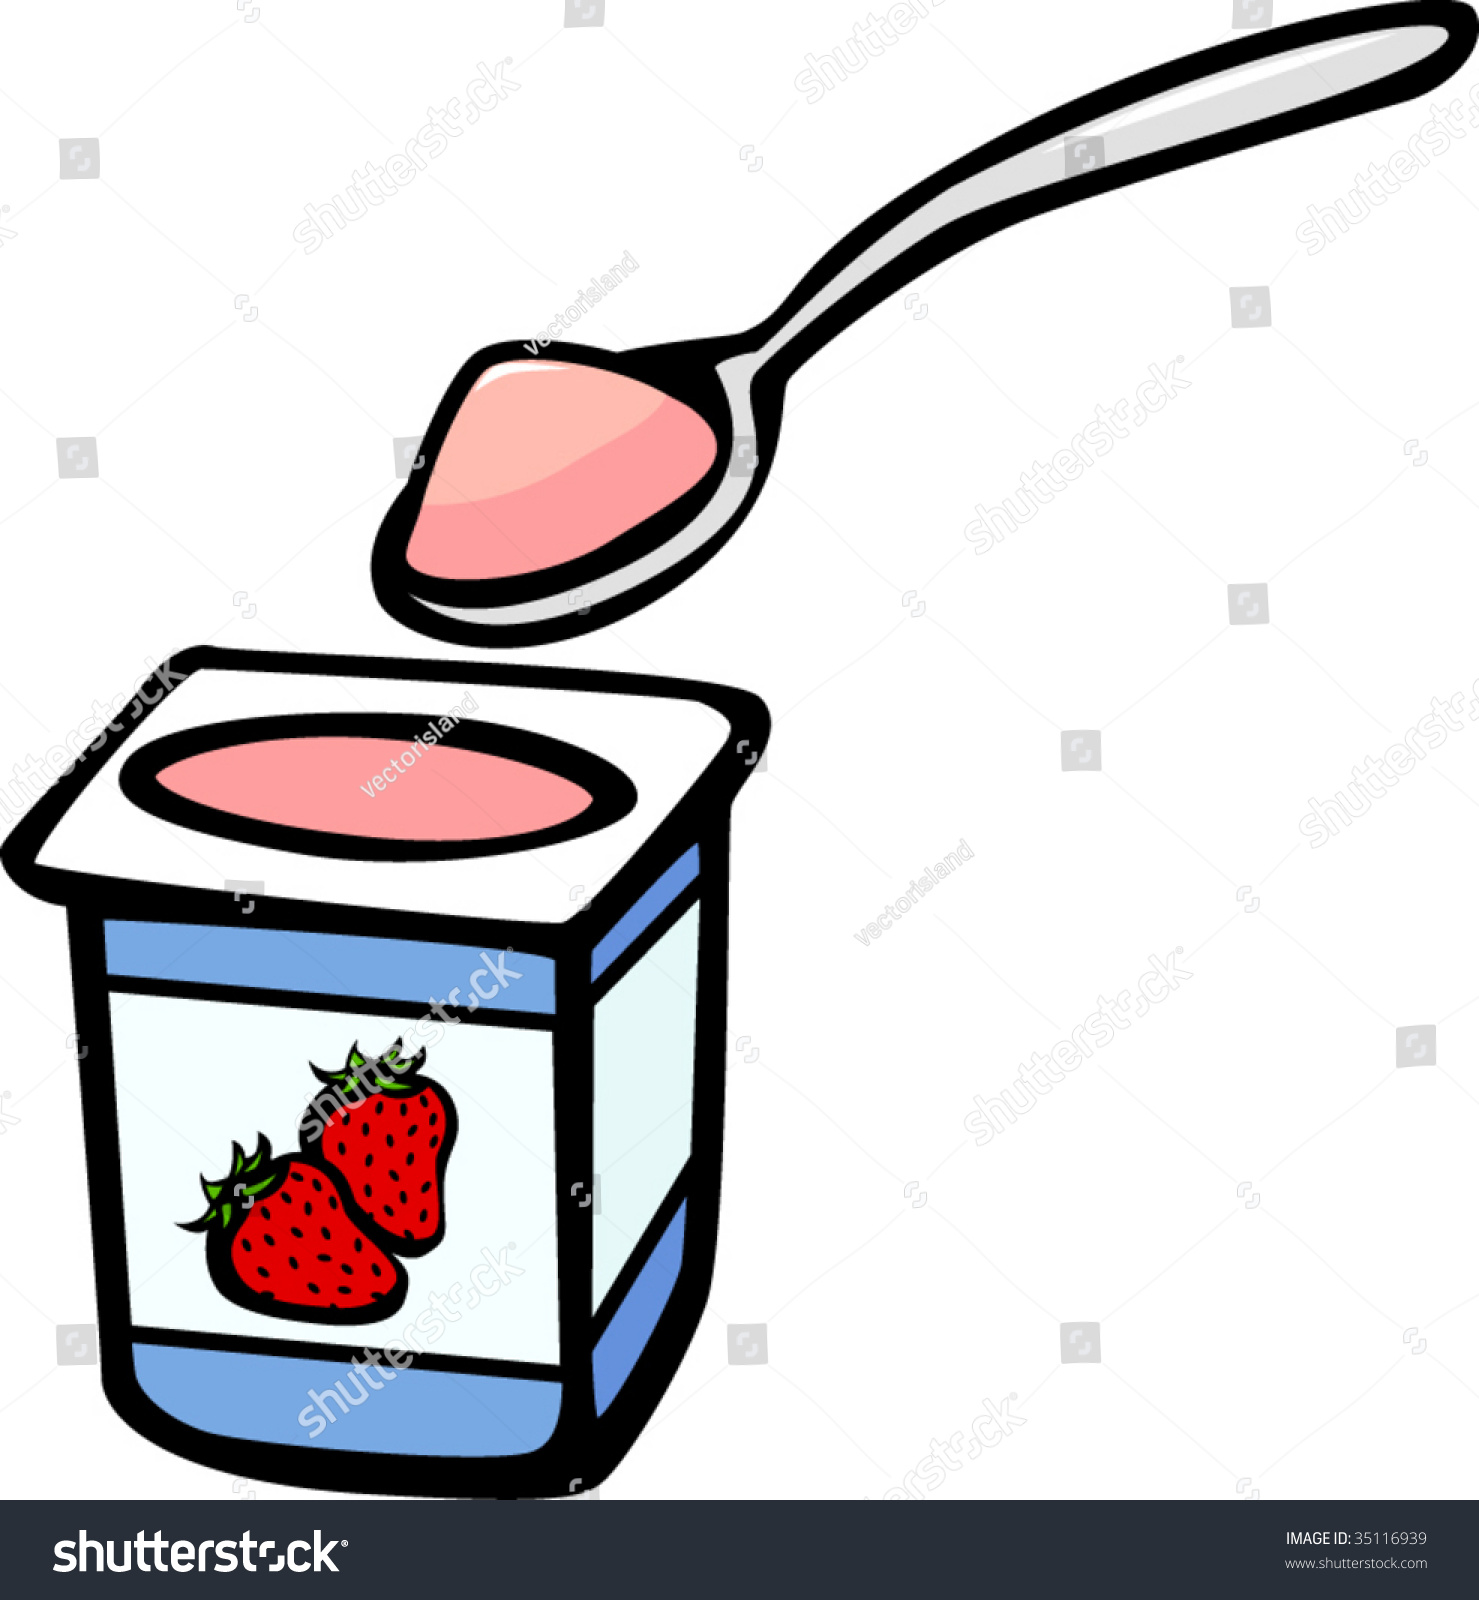 clipart of yogurt - photo #44